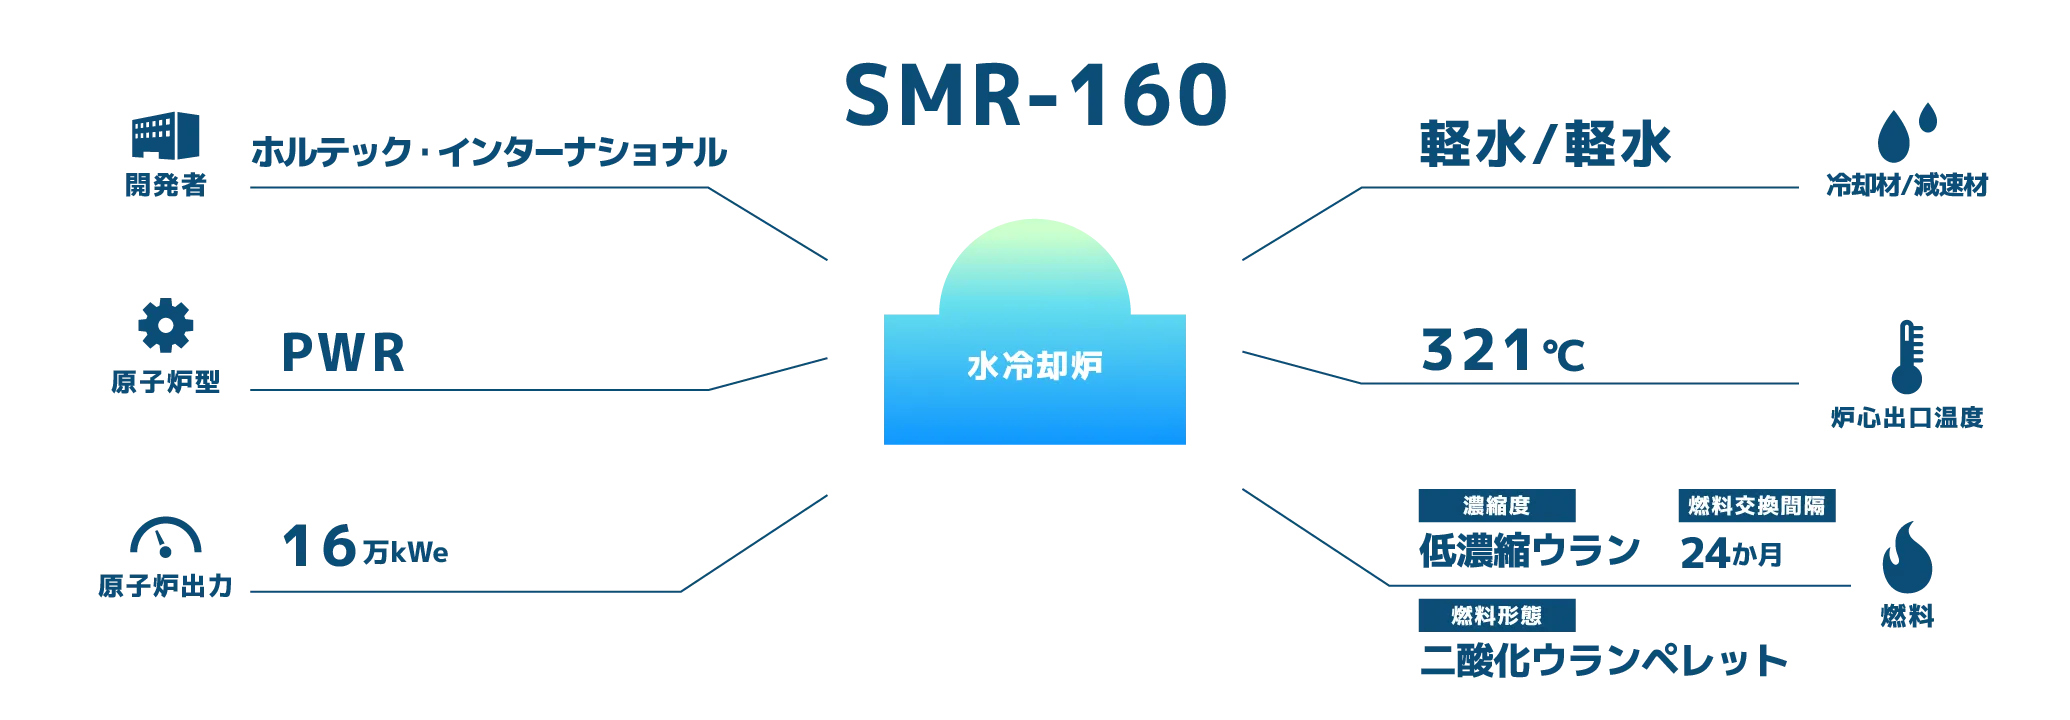 SMR-160